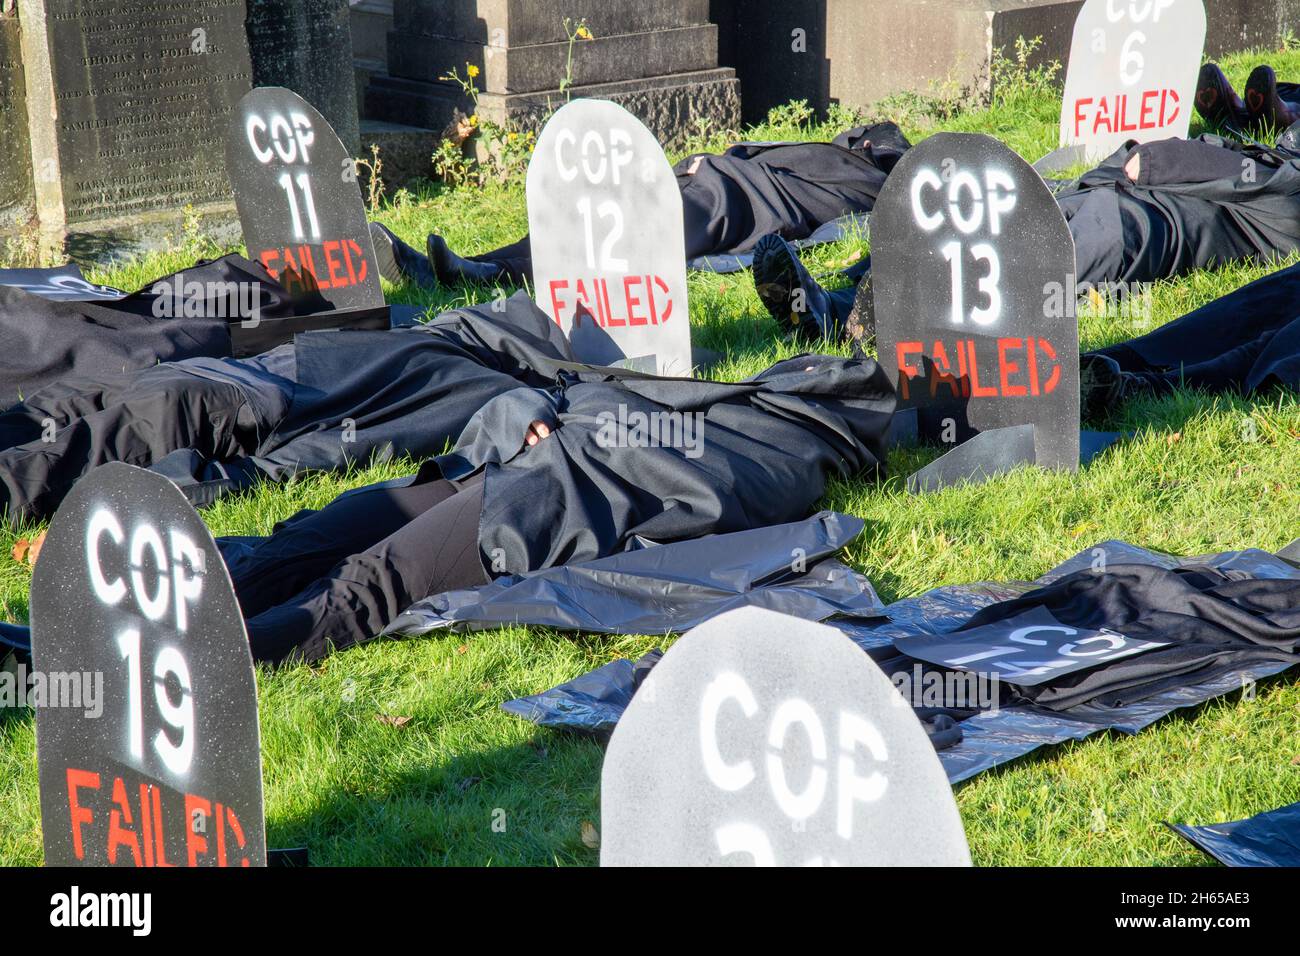 La Brigade de la Rebel Rouge rejoint la Brigade de la Rebel Bleue au cimetière de la nécropole de Glasgow pour le funéraire de la COP26.Les militants écologistes qui pleusent le risque de voir la COP26 échouer et avoir organisé des funérailles fictives pour le sommet.La COP26 est posée dans une tombe aux côtés de tous les précédents sommets de la CdP. Banque D'Images